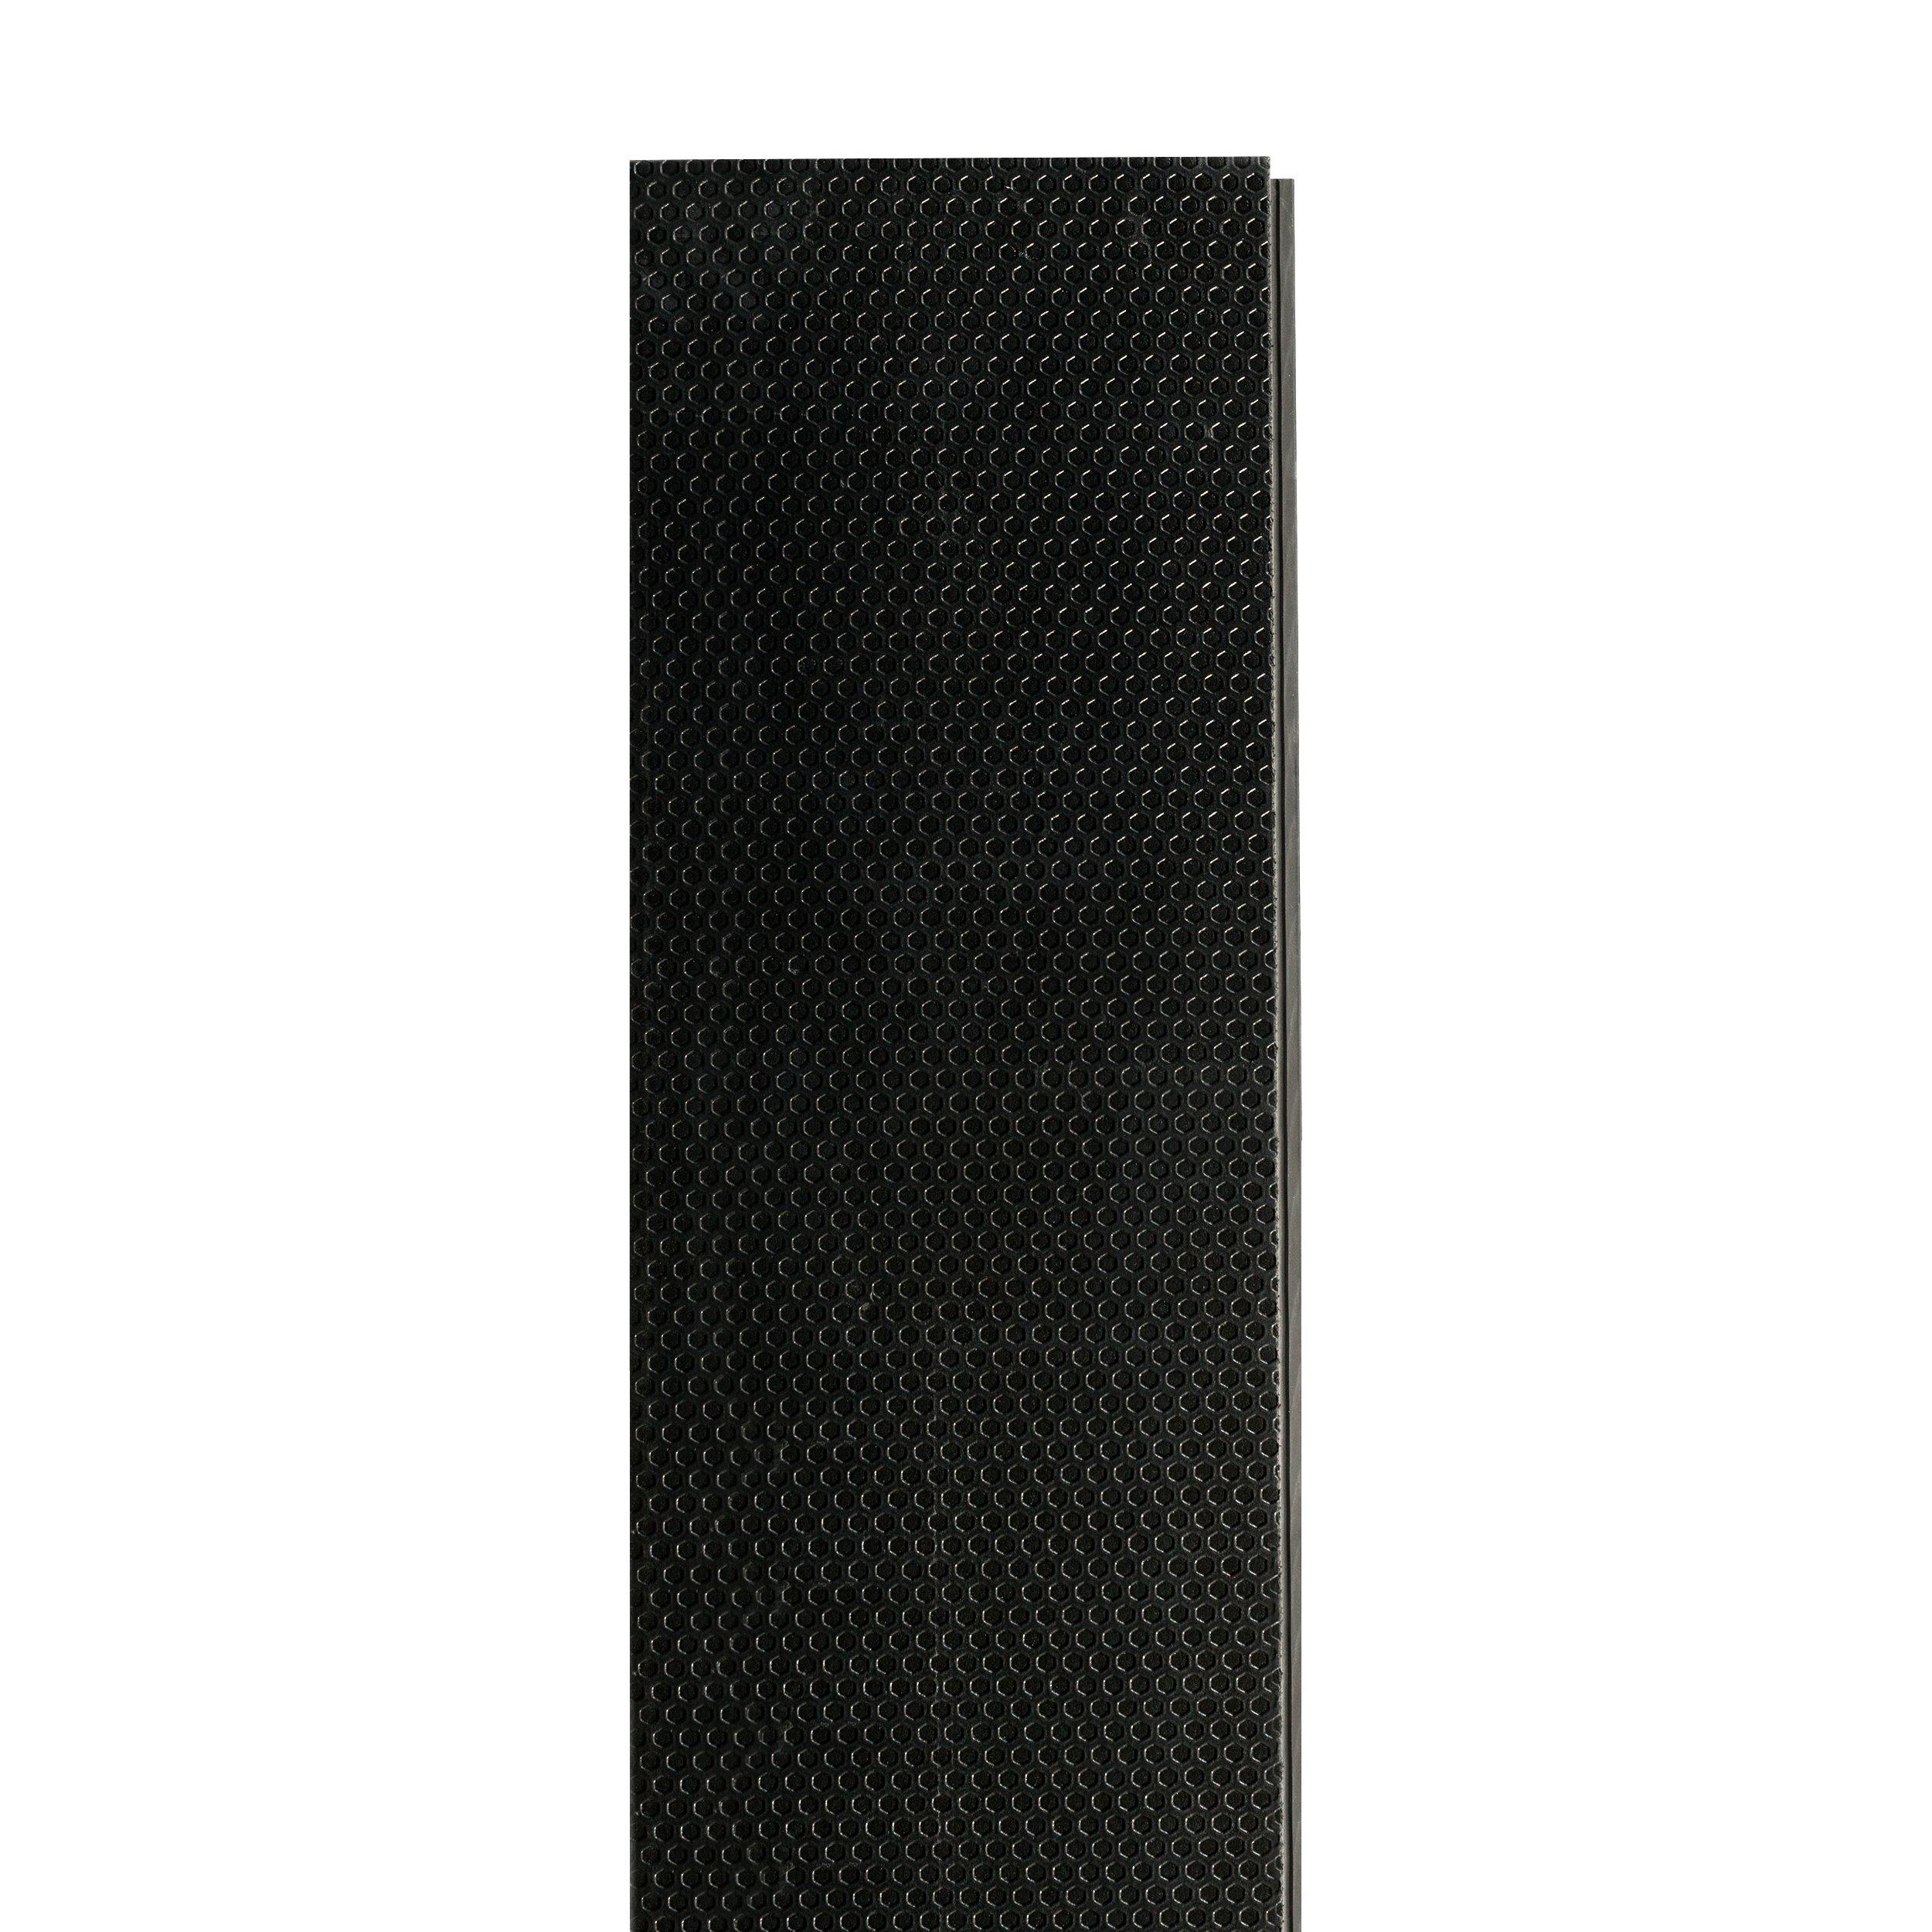 Auburn Glen Rigid Core Luxury Vinyl Plank - Foam Back